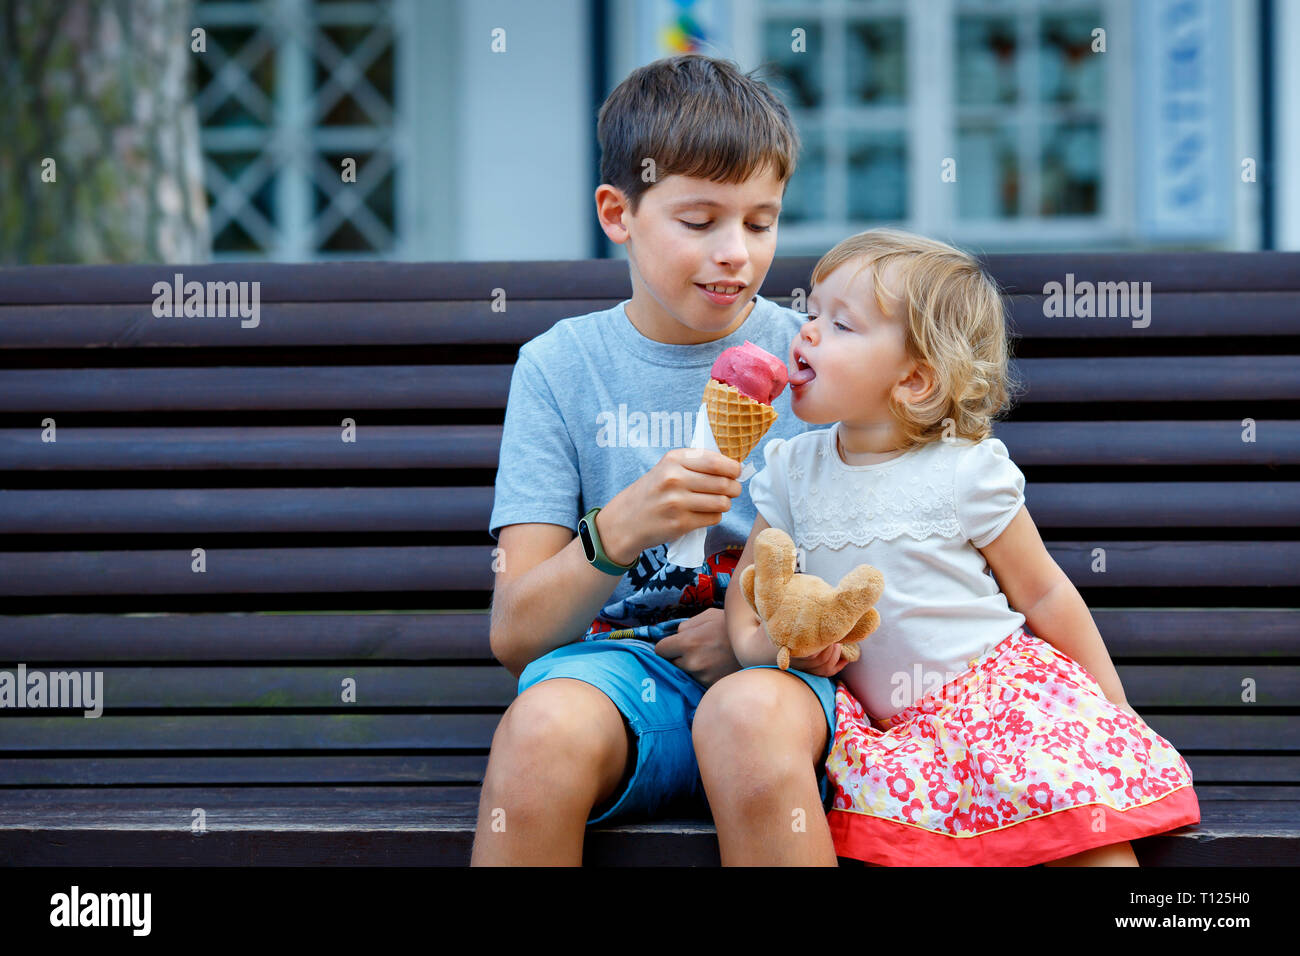 Big brother en donnant sa crème glacée à petite soeur outdoor Banque D'Images